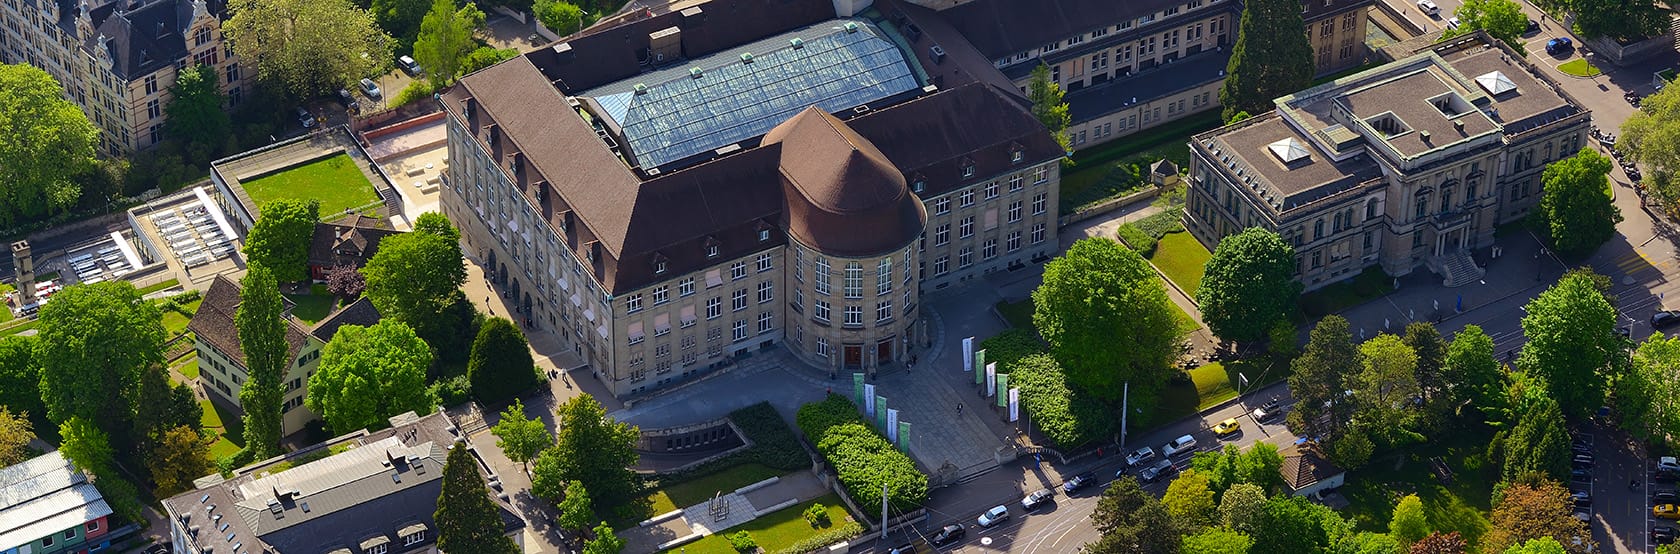 Luftaufnahme des Hauptgebäudes der Universität Zürich